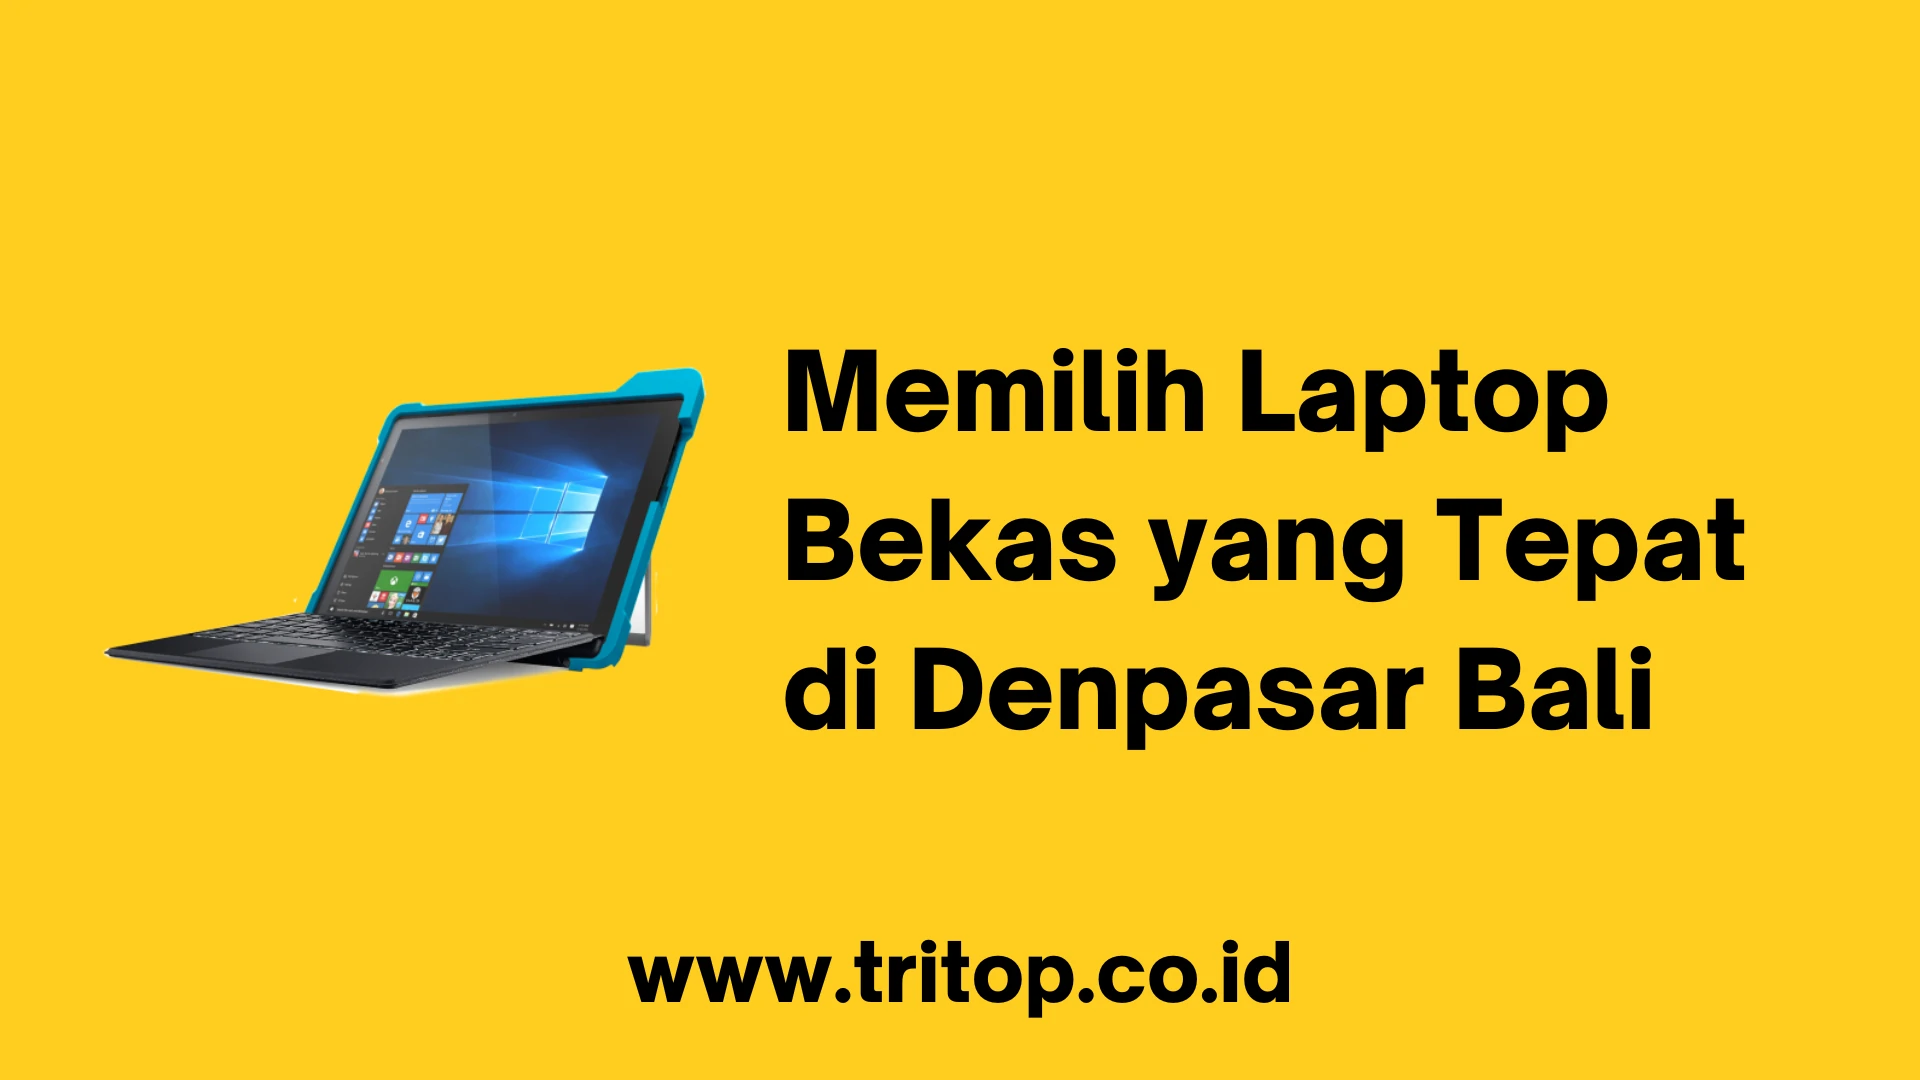 Laptop Bekas Denpasar Bali